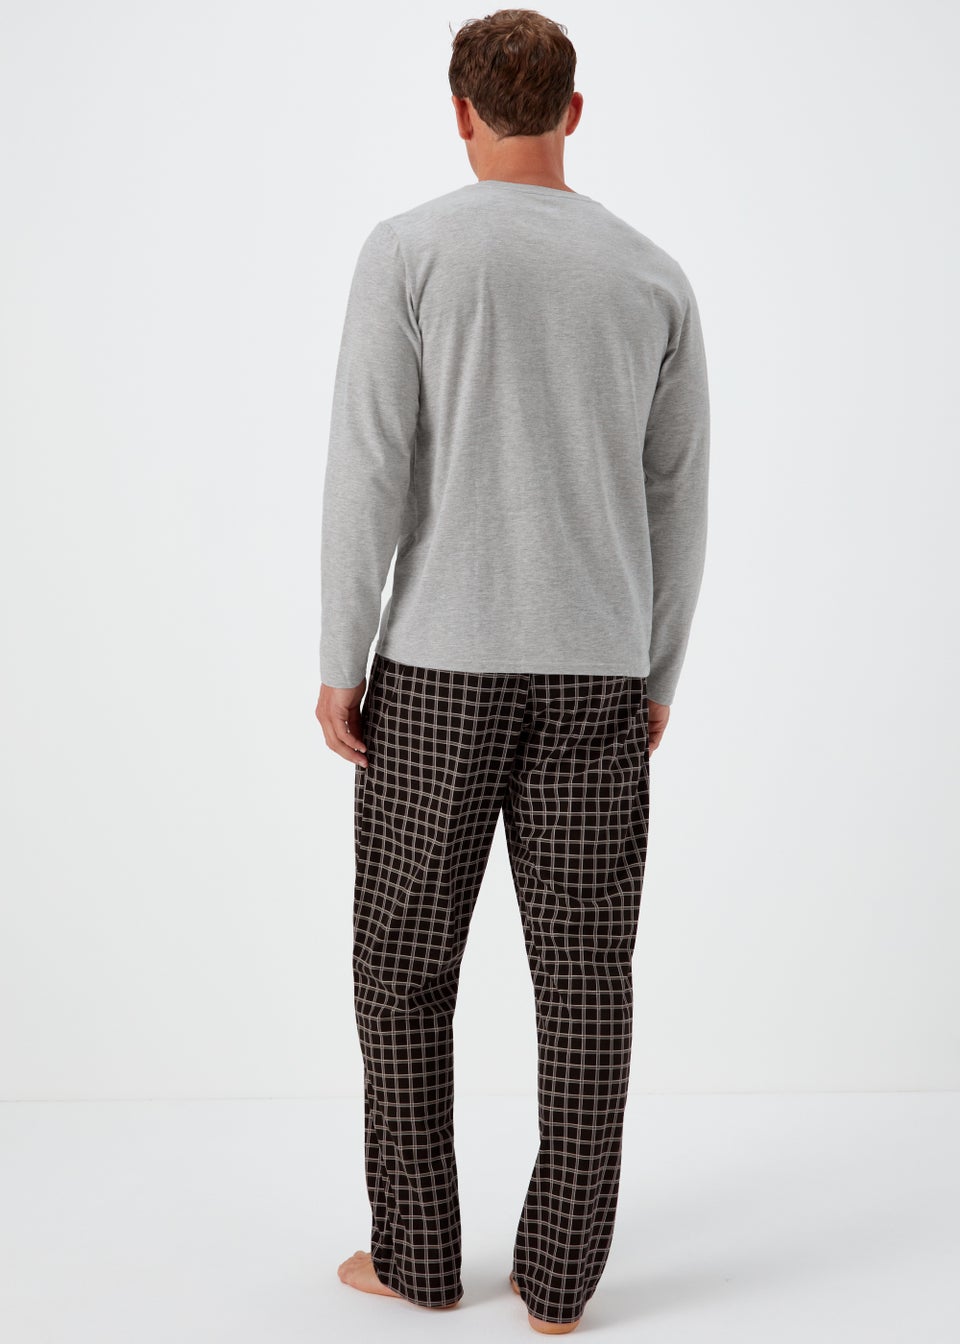 Grey Marl Check Print Pyjama Bottoms